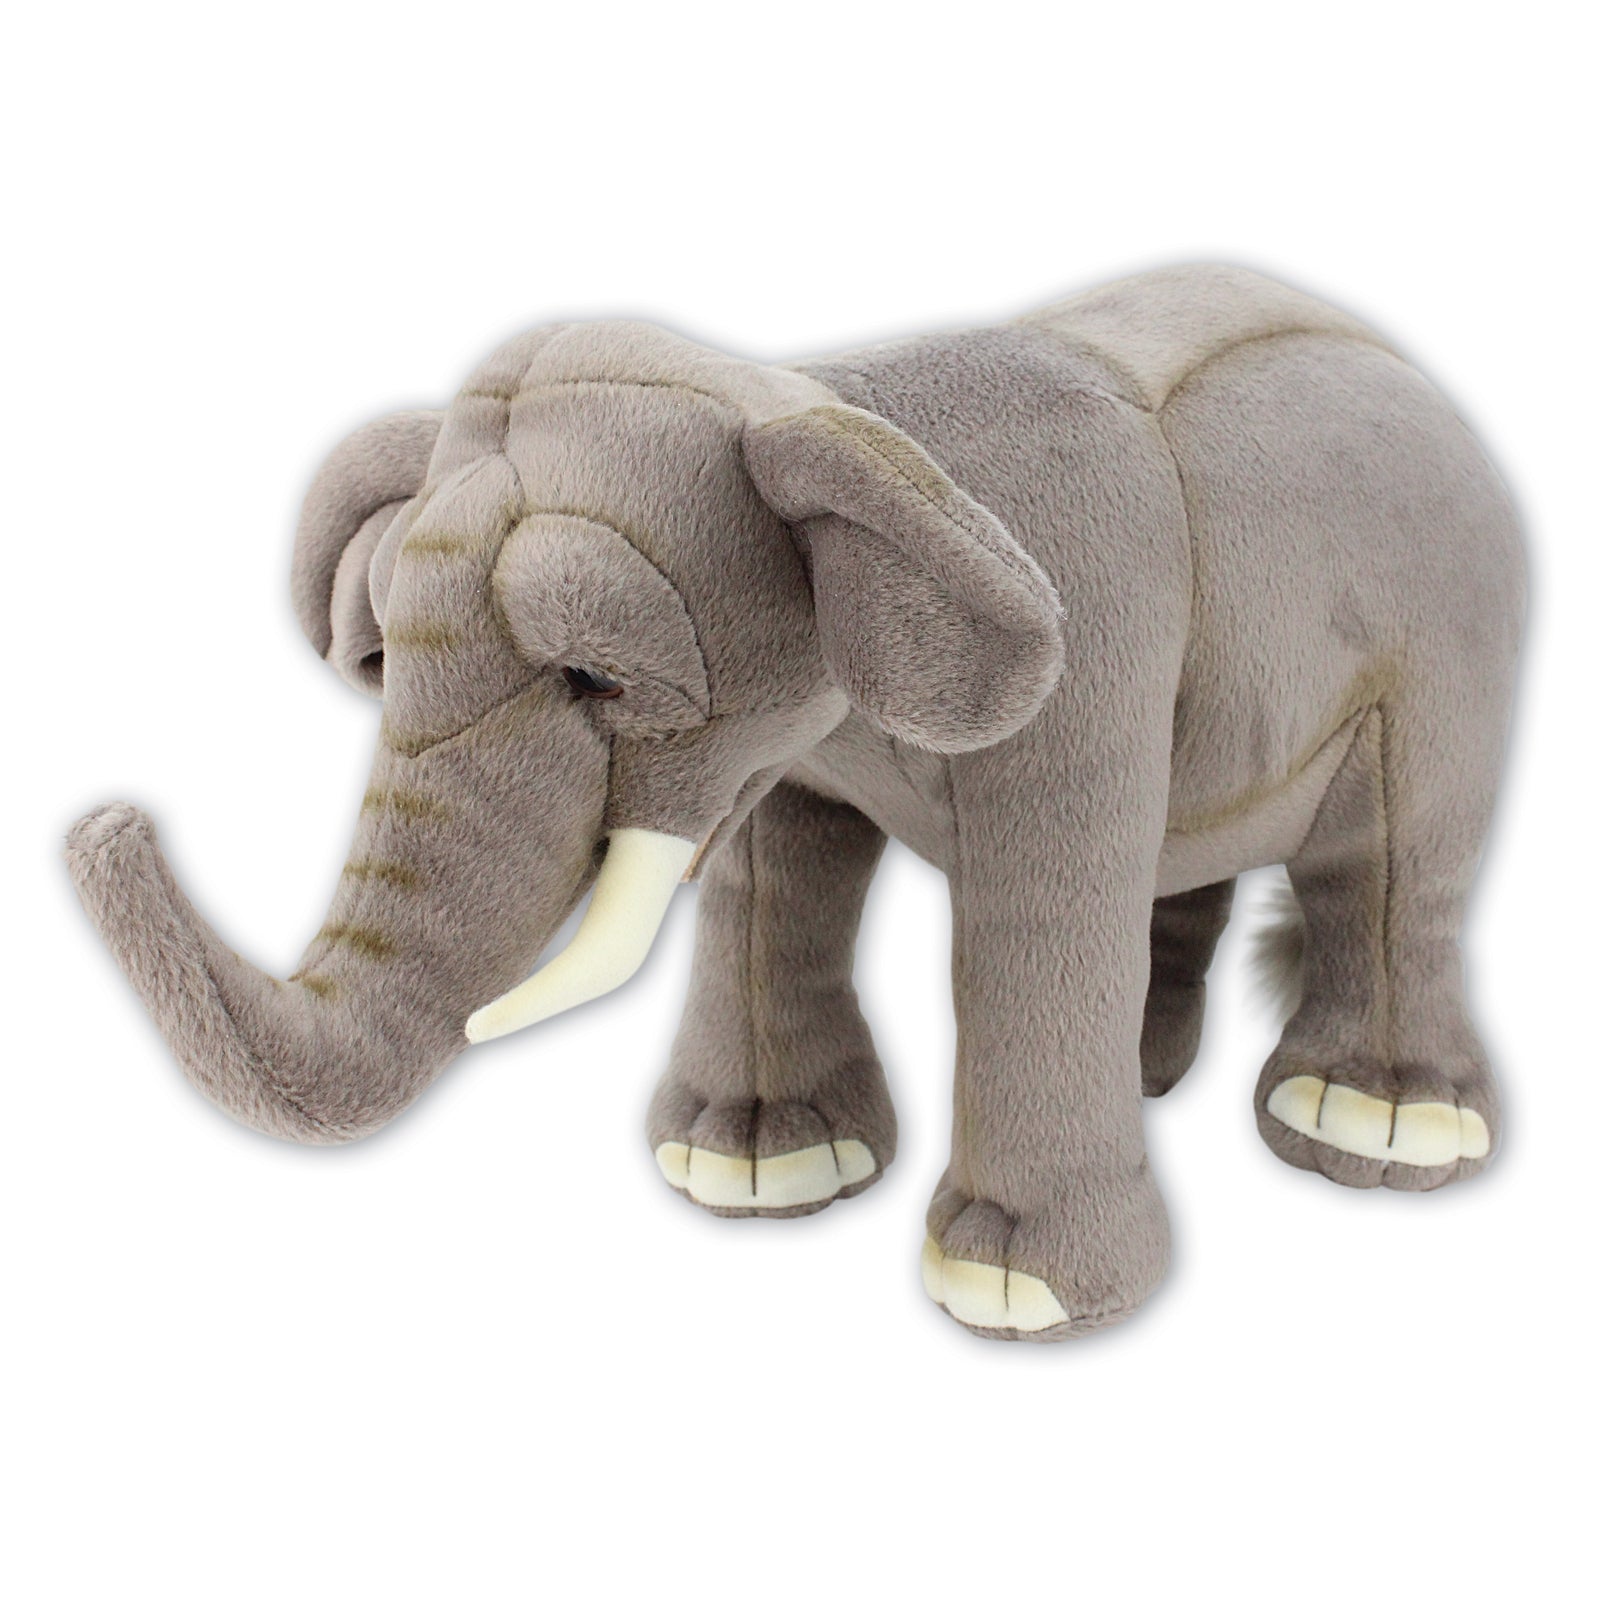 Ark Toys Asian Elephant W/Beans 21cm